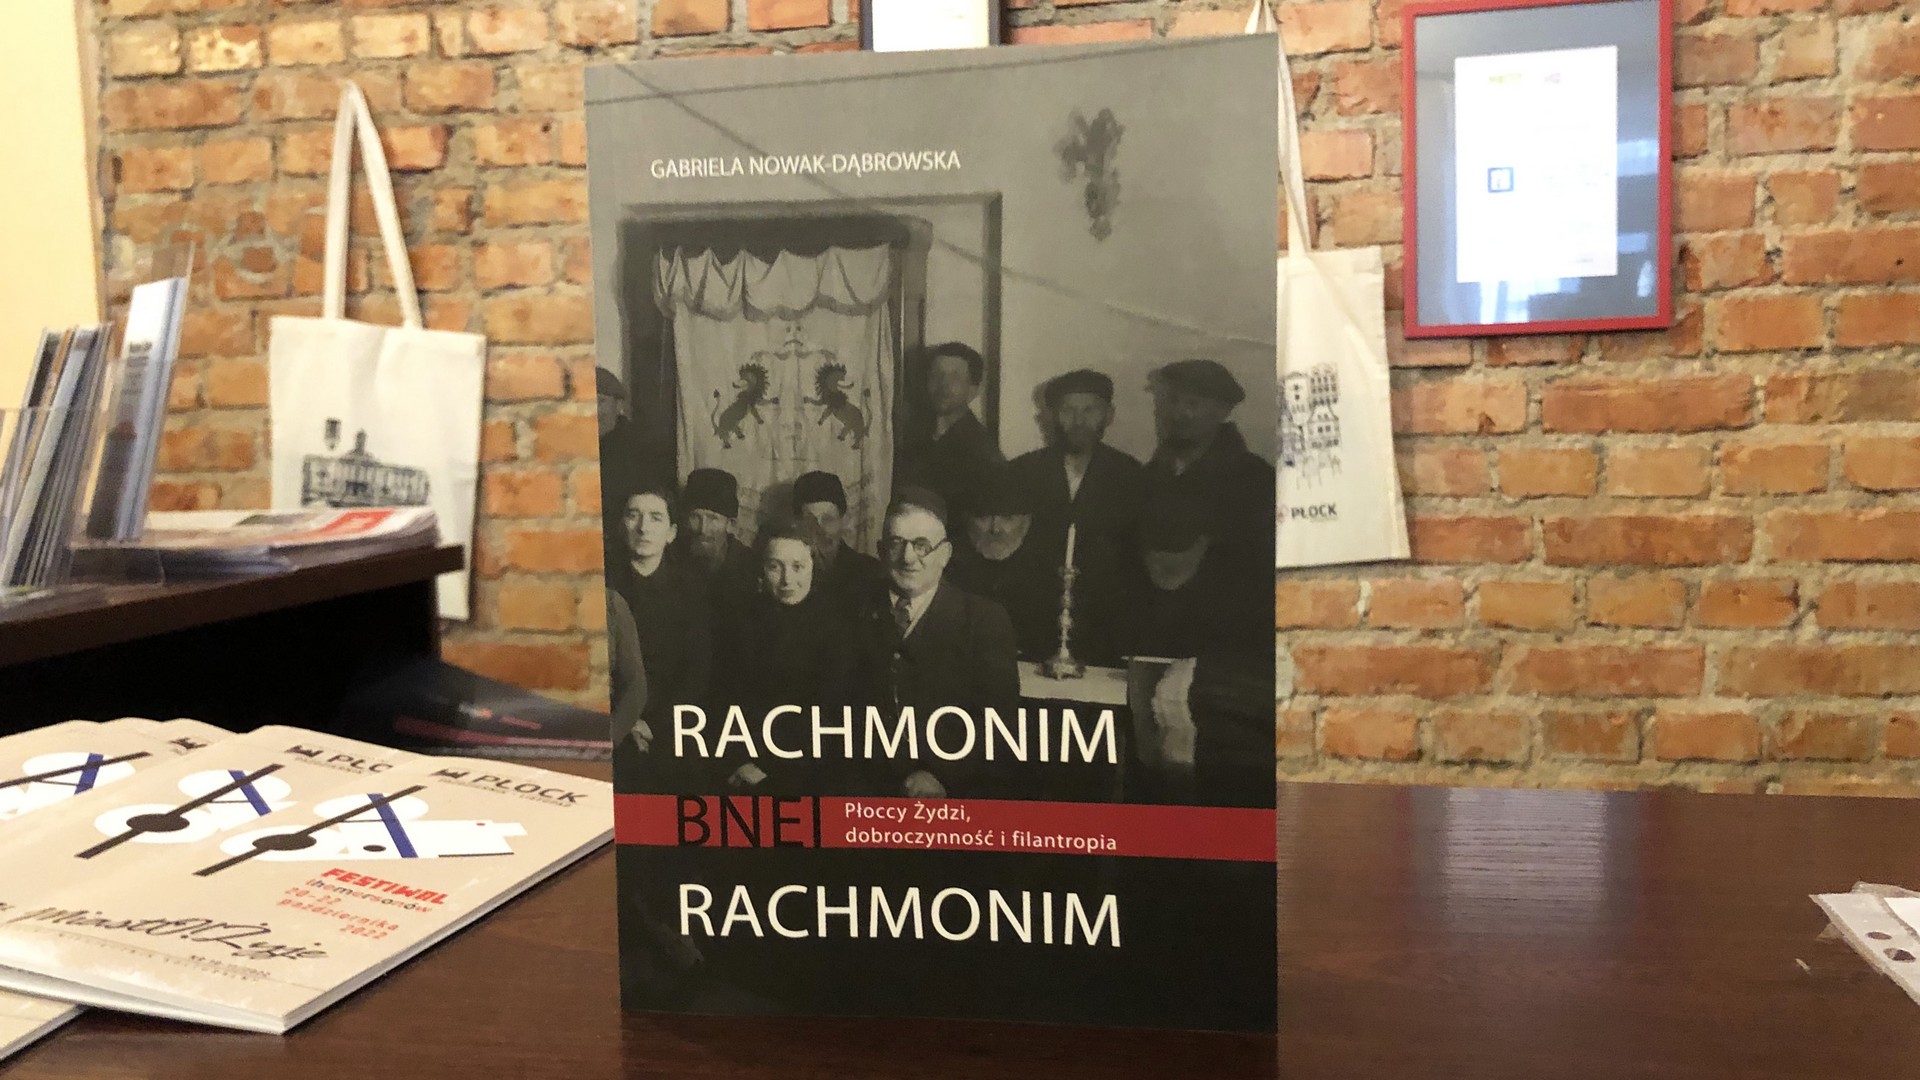 Książka “Rachmonim bnei rachmonim. Płoccy Żydzi, dobroczynność i filantropia” dostępna od 14 listopada